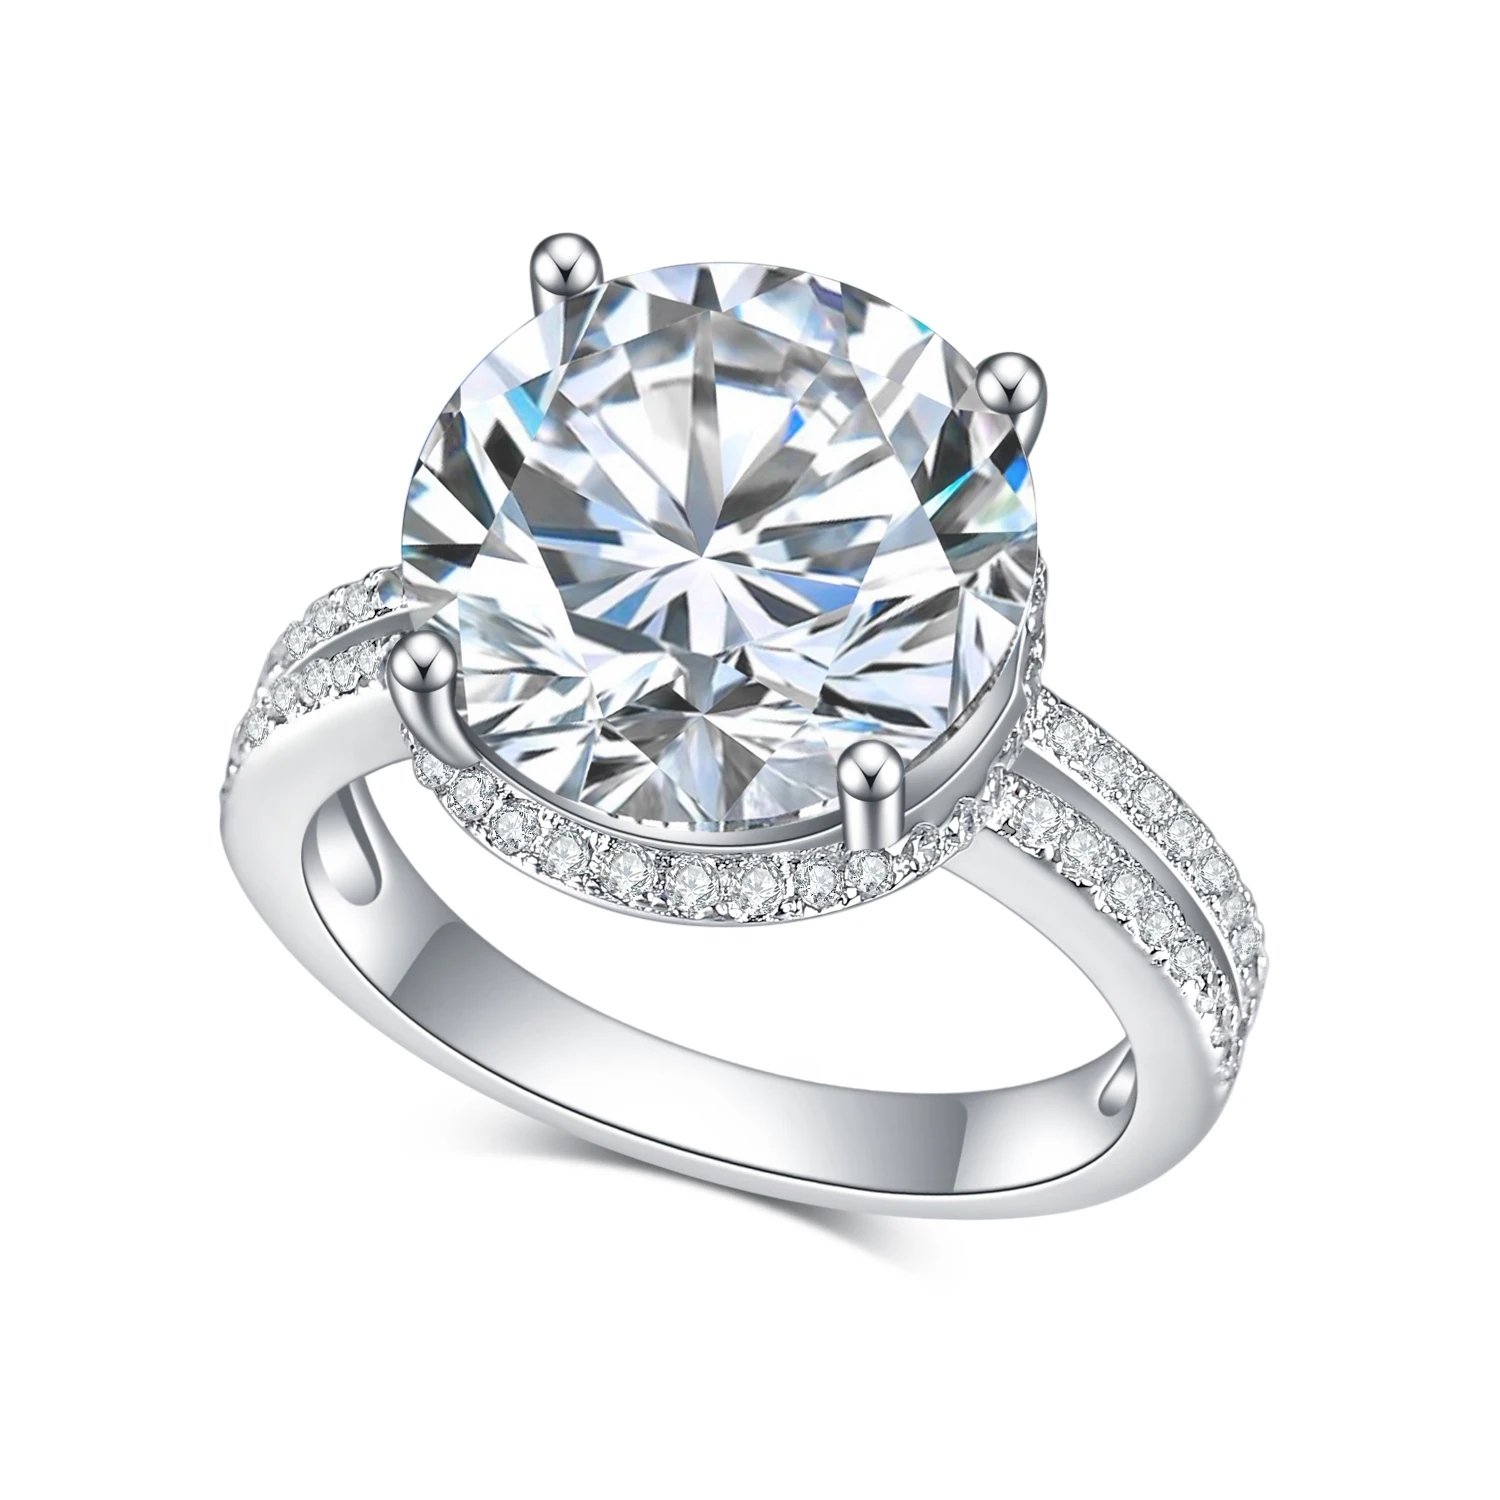 

GEM'S BALLET AU750 585 14K 10K 18K Gold 925 Silver Ring 6.0CT Round Cut Moissanite Split Shank Engagement Rings For Women